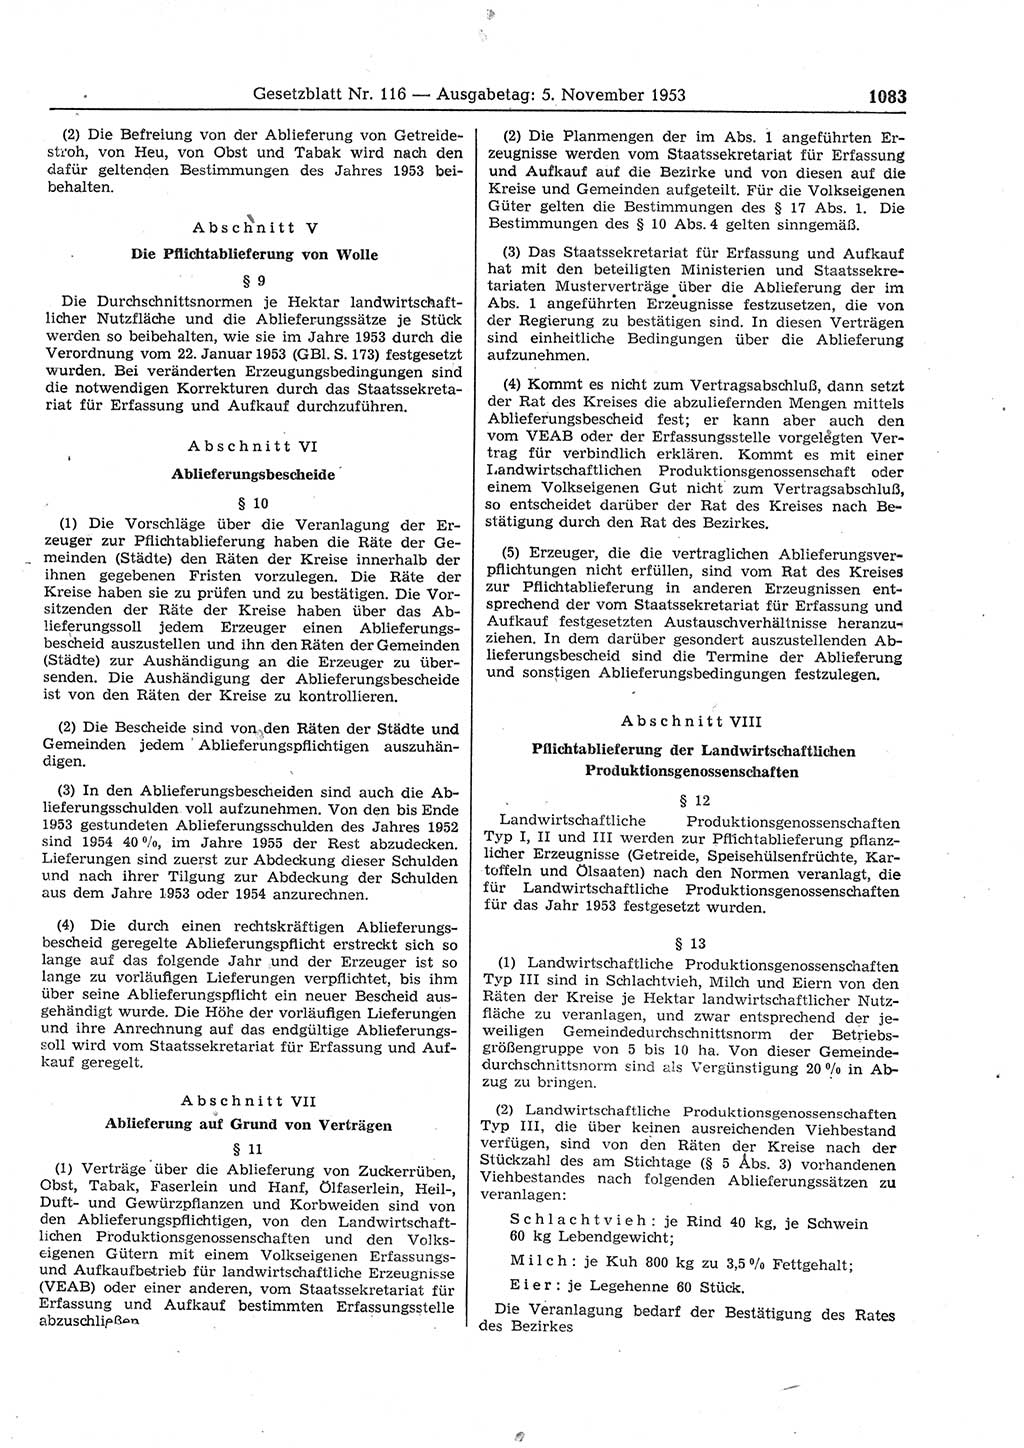 Gesetzblatt (GBl.) der Deutschen Demokratischen Republik (DDR) 1953, Seite 1083 (GBl. DDR 1953, S. 1083)